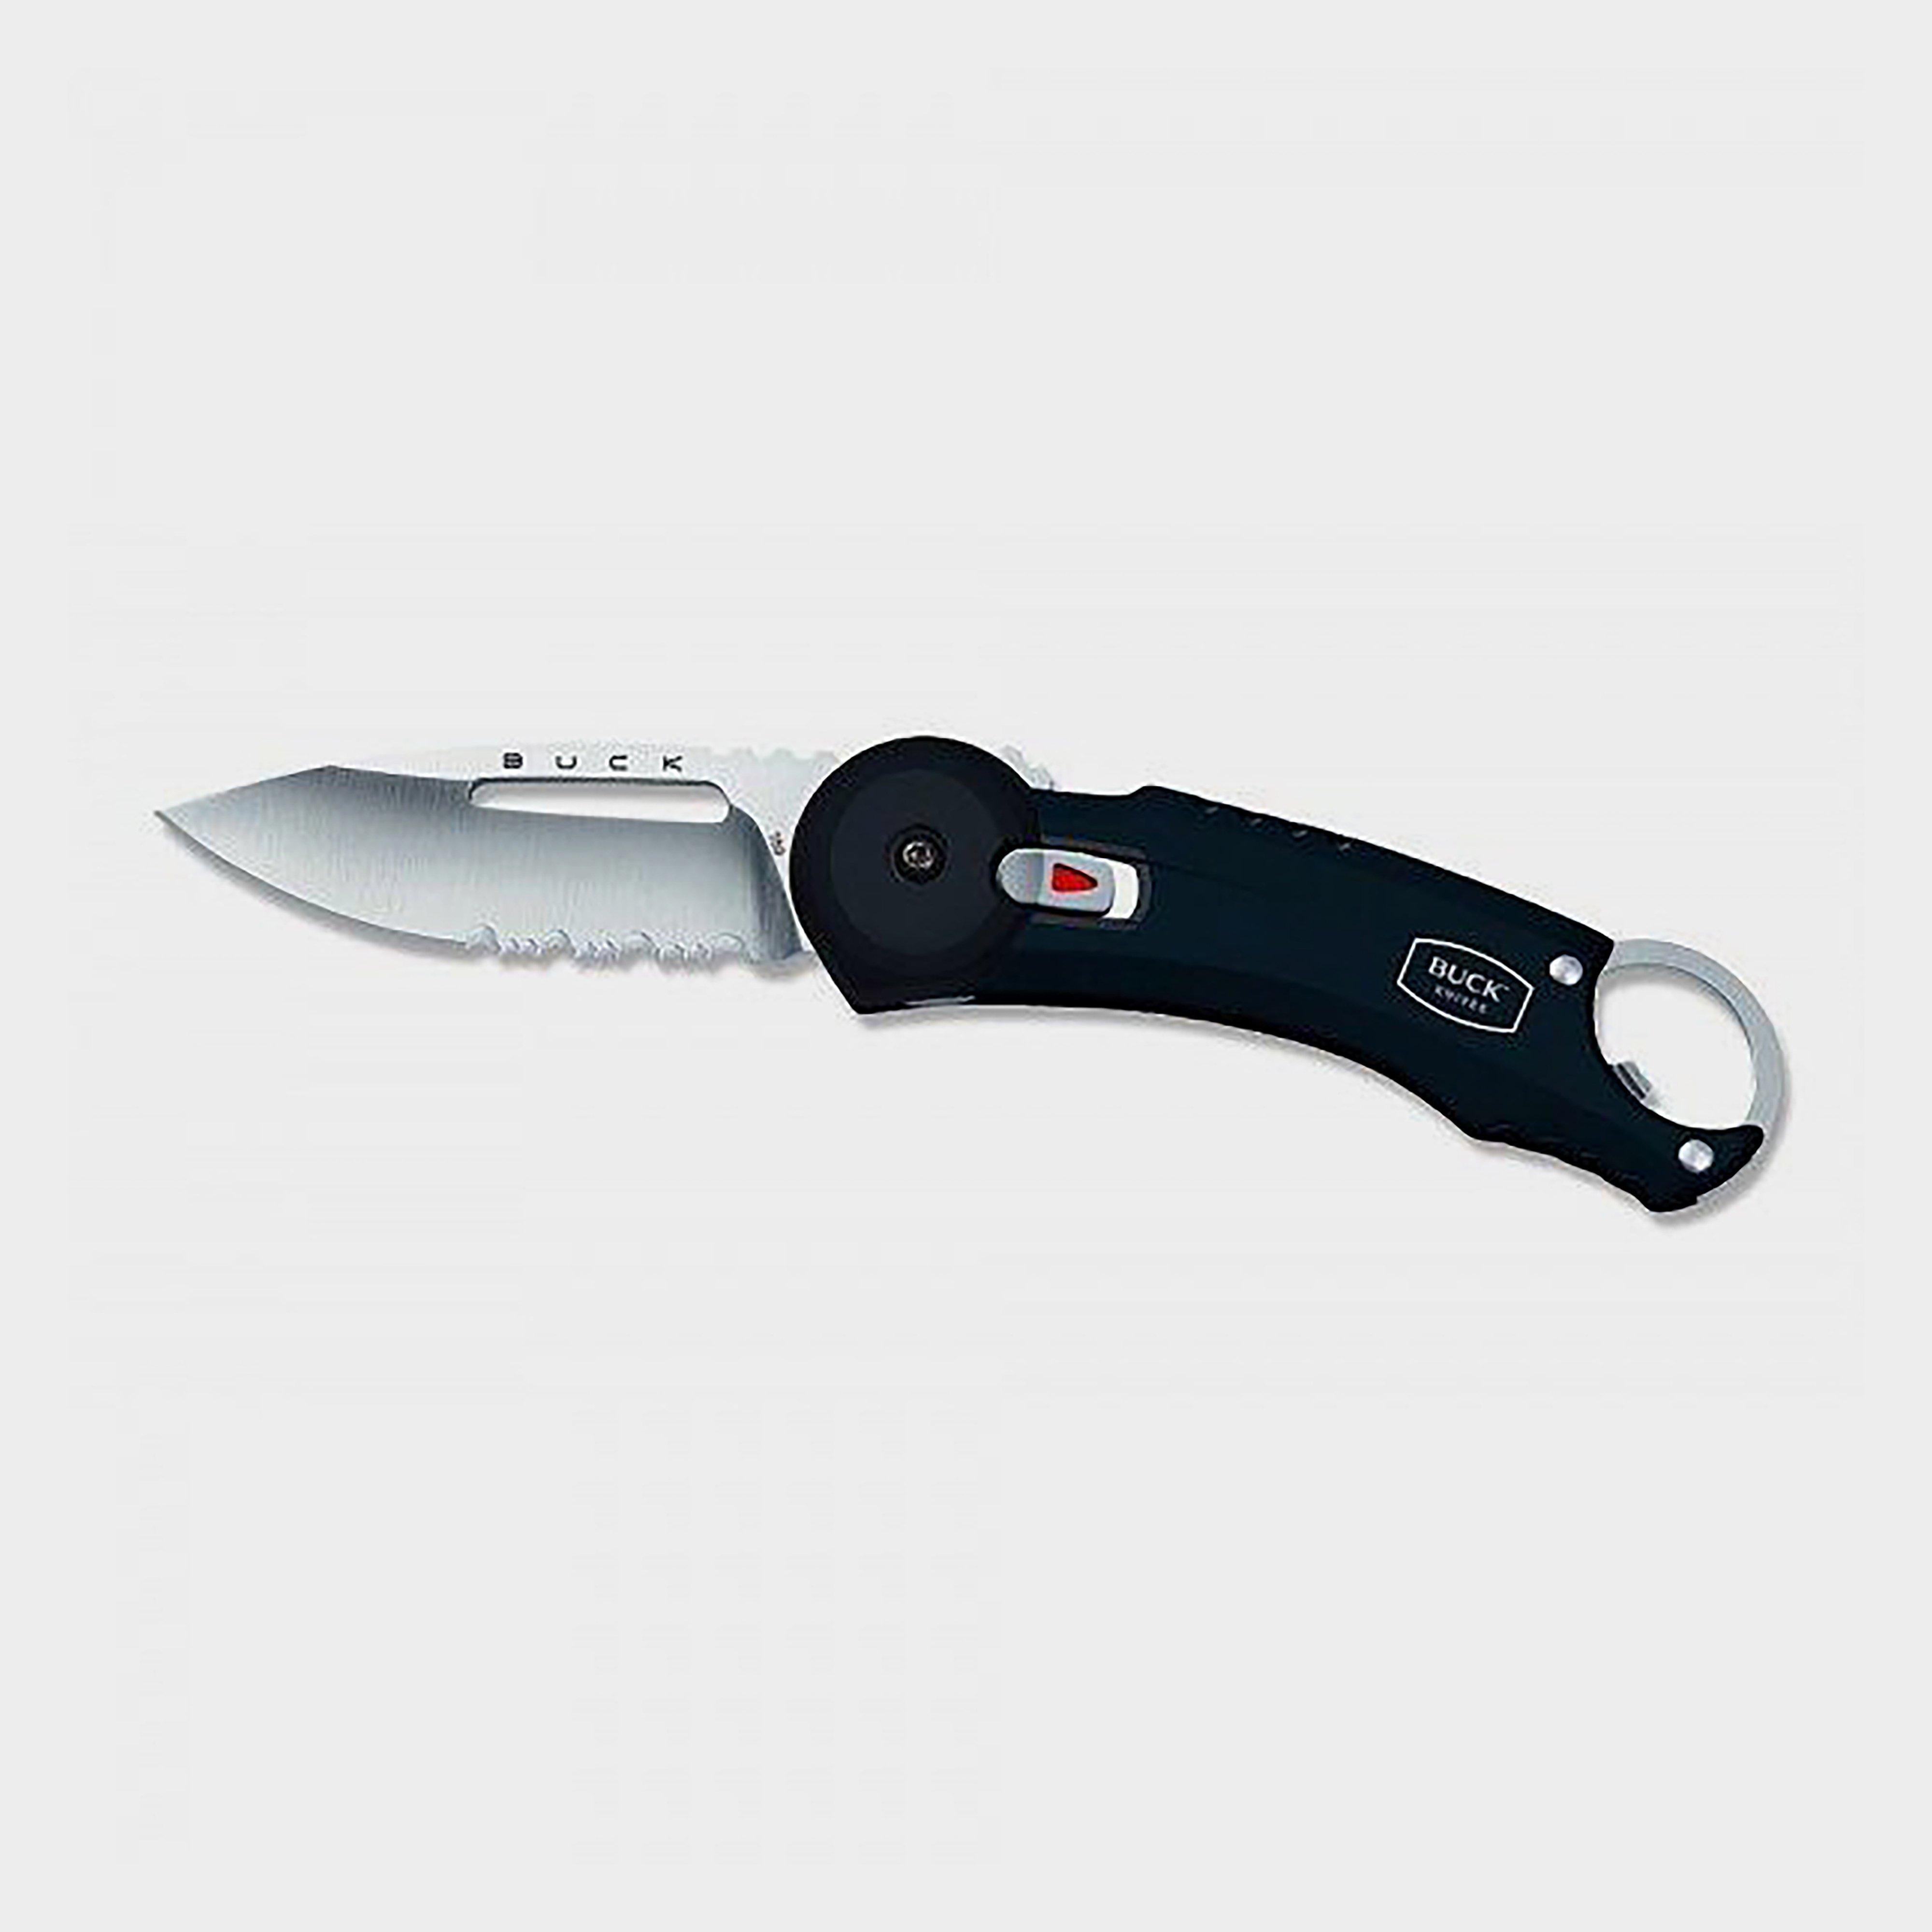 Buck Buck 750 Redpoint Knife, KNIFE